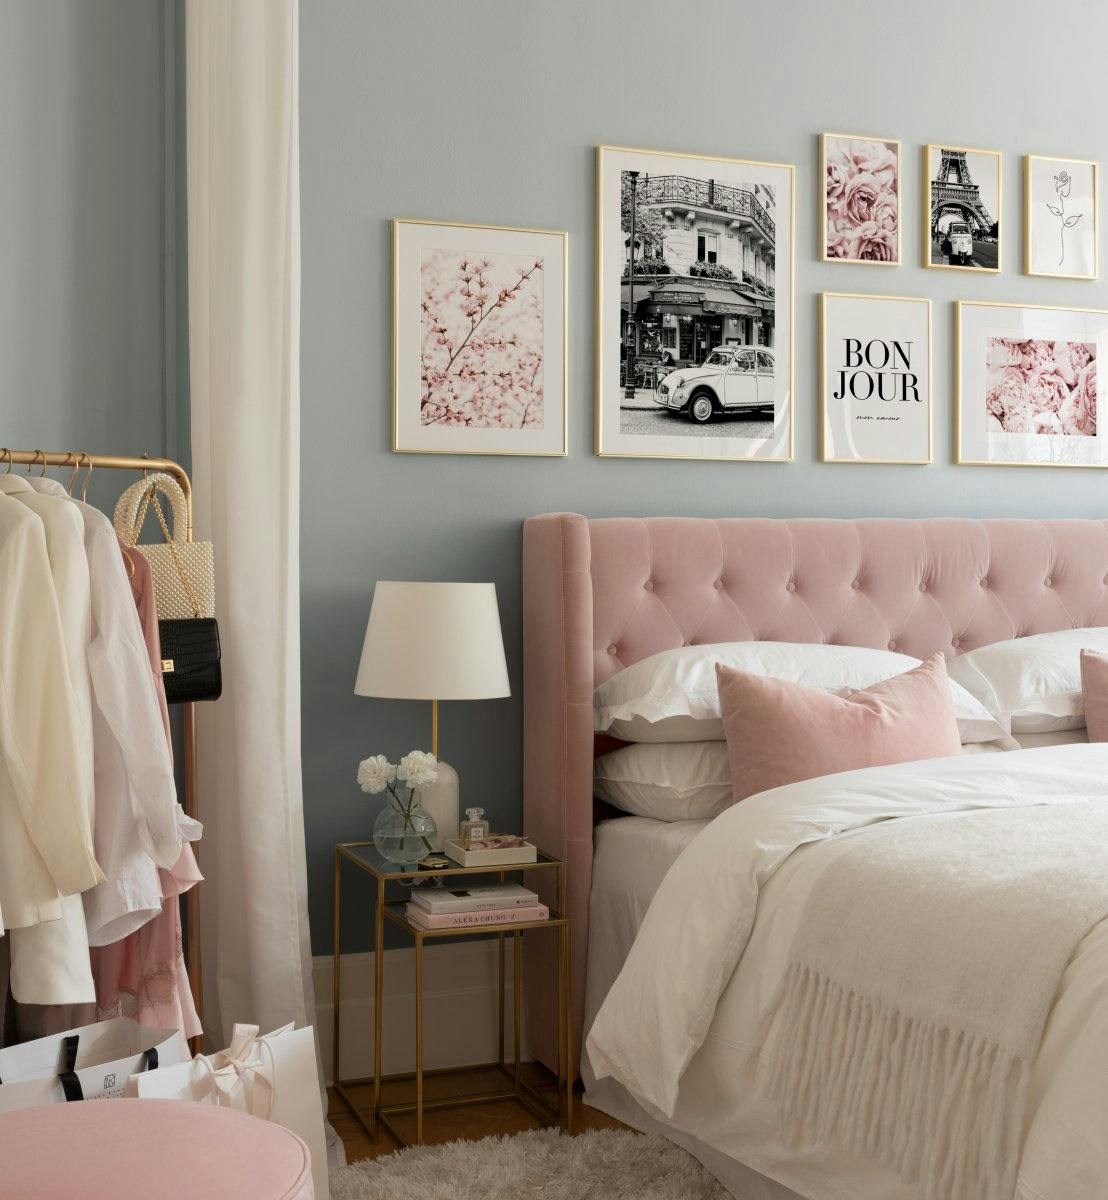 Monokrome og rosa plakater til soverommet